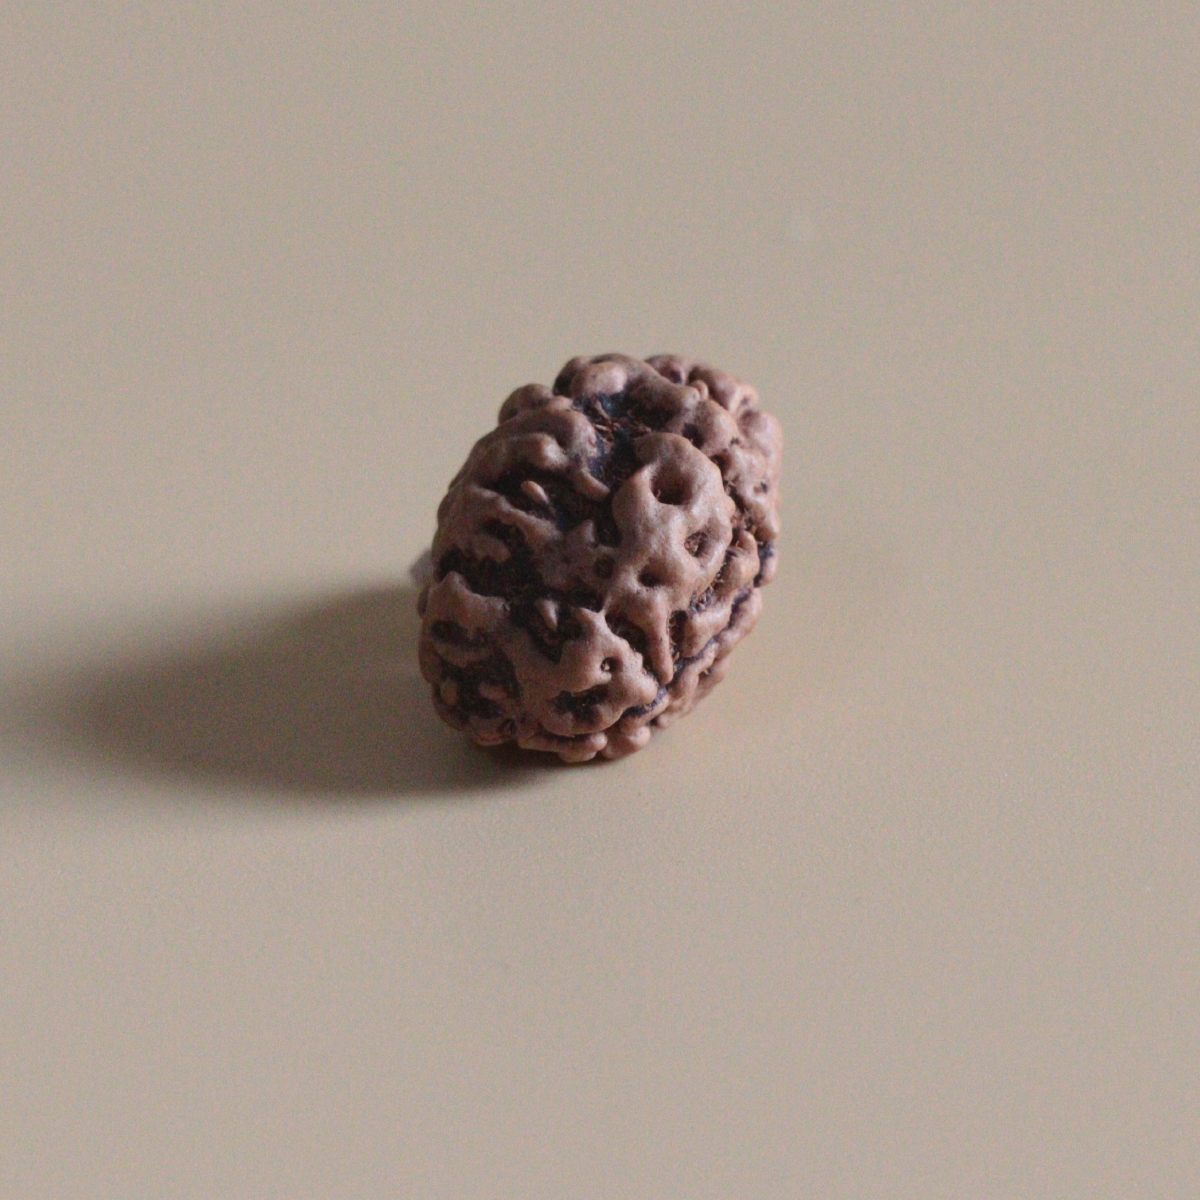 2 Mukhi Rudraksha Nepal Origin Collector Bead